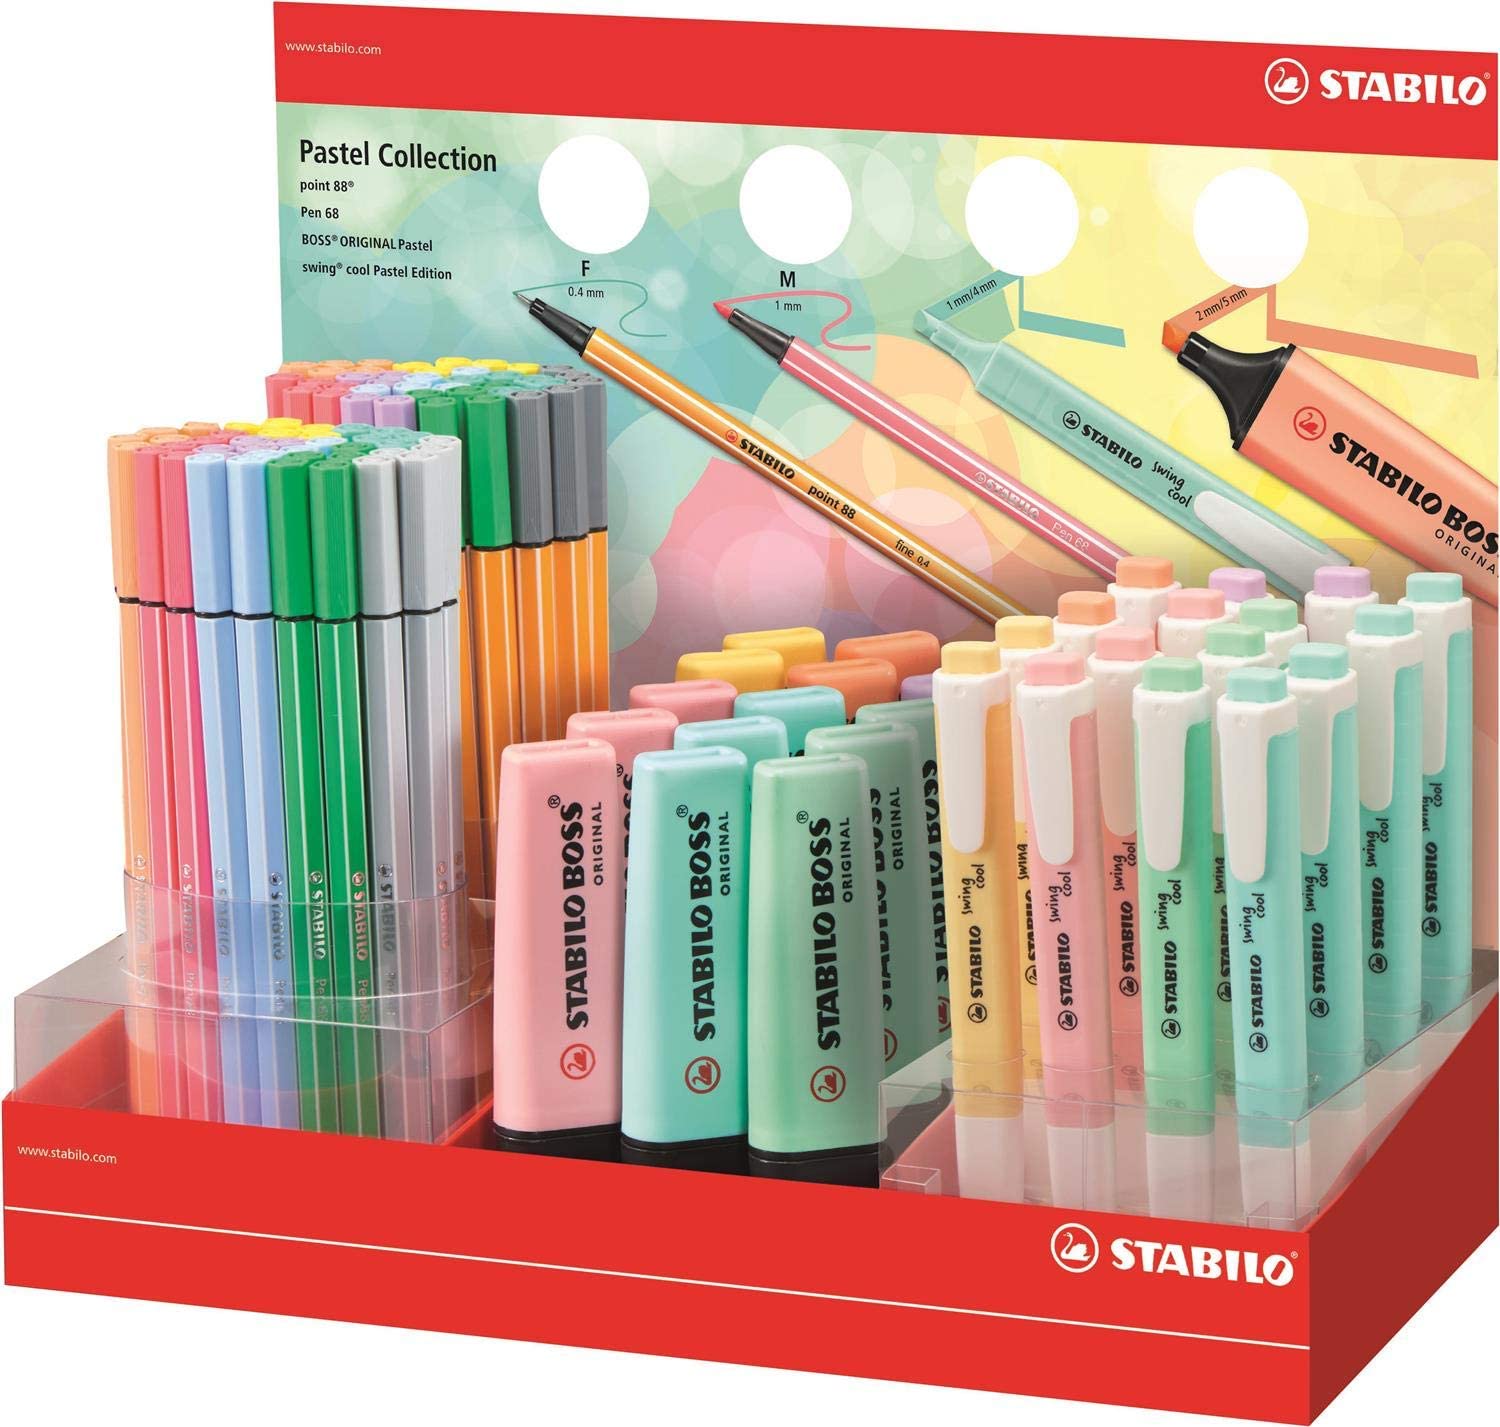 https://www.axartoner.com/images/productos/stabilo-expositor-coleccion-pastel-de-111-rotuladores-y-marcadores-fluorescentes-15-boss-16-swing-cool-40-point-88-y-40-pen-68-colores-surtidos.jpg